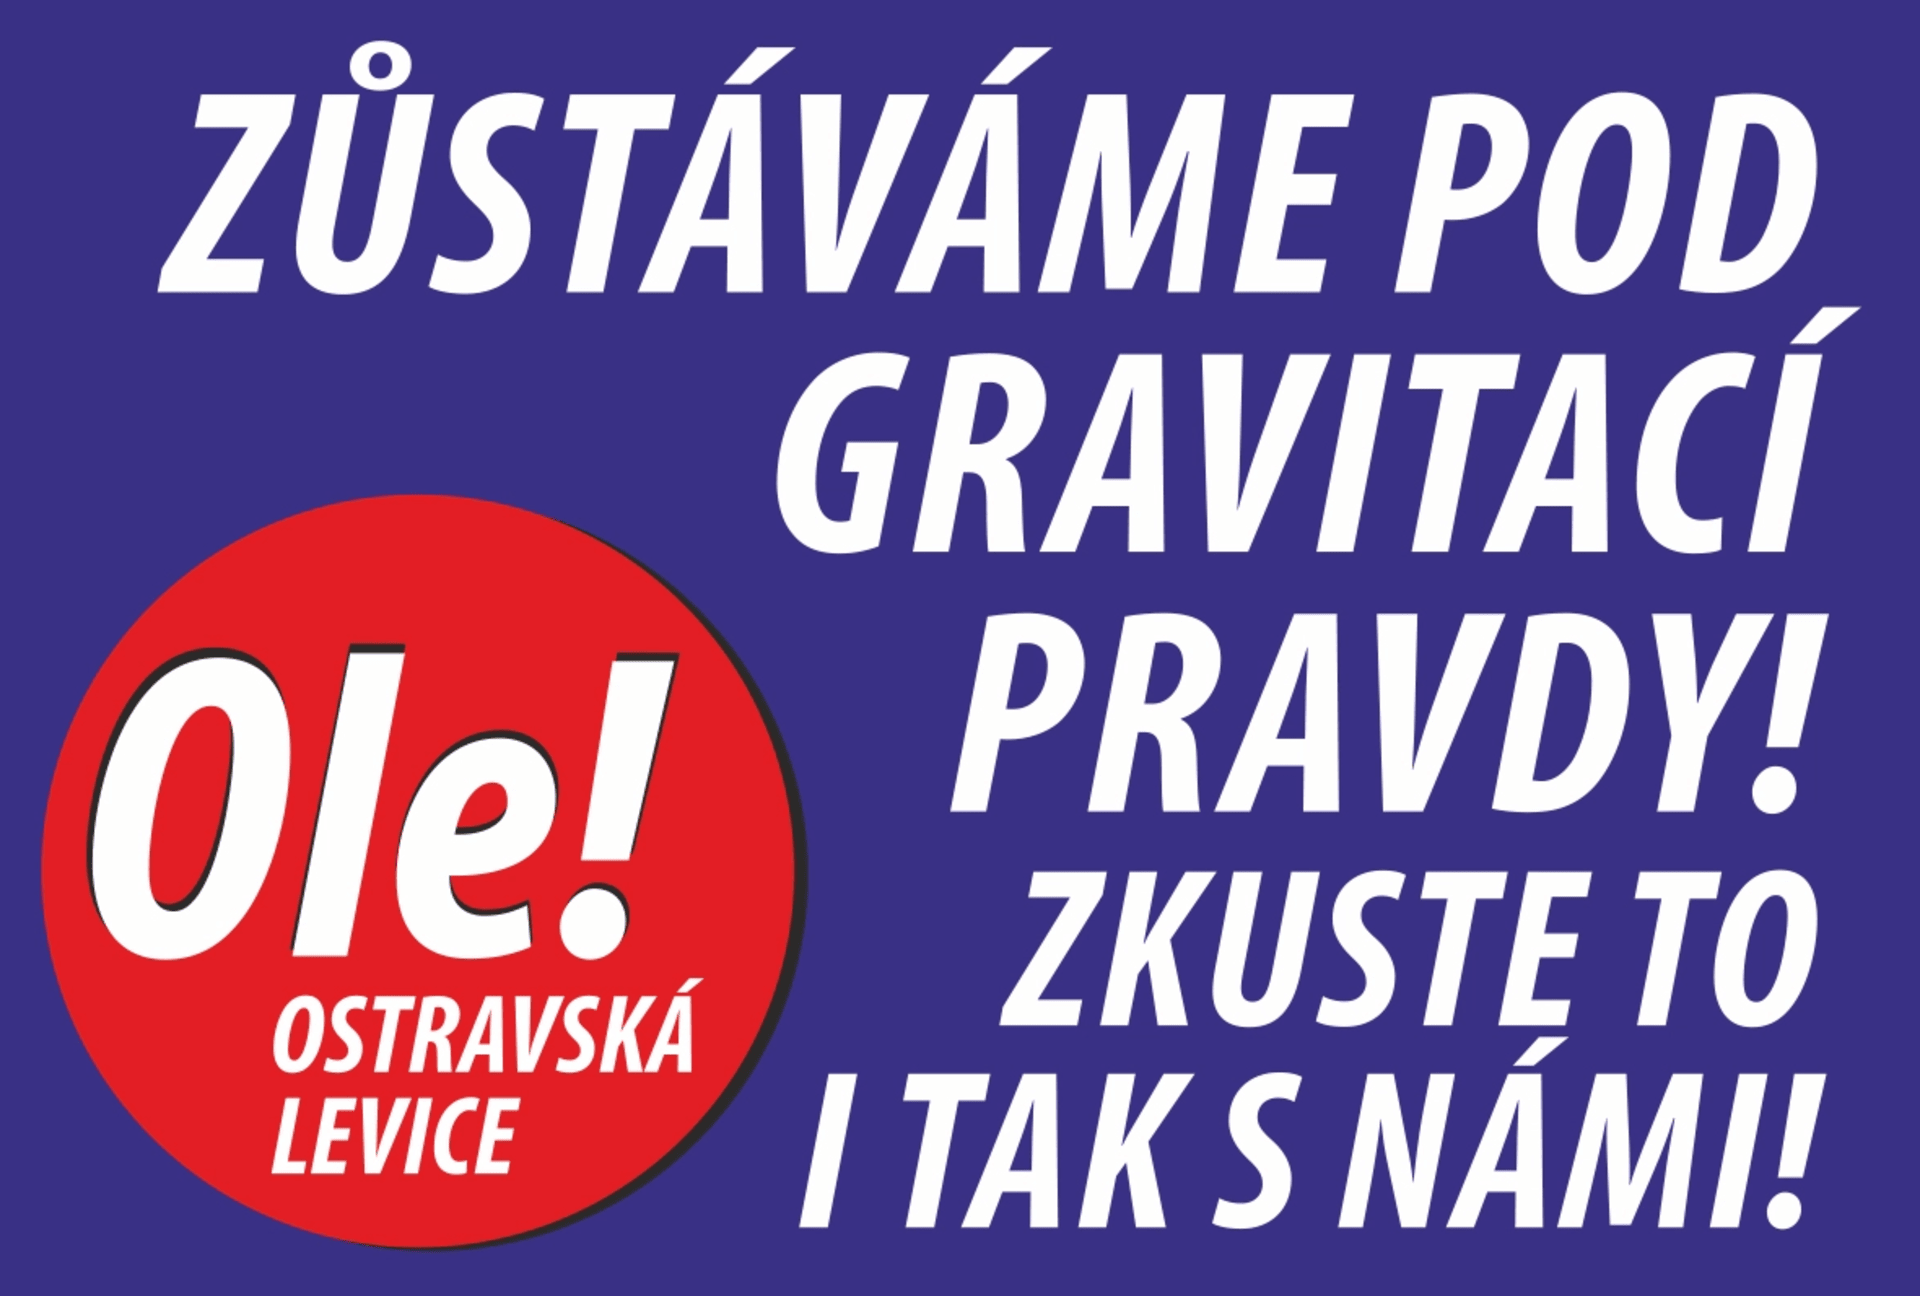 S heslem, které asi u voličů nebude příliš úspěšné, vyrukovalo uskupení Ole, tedy Ostravská levice, která mimo jiné zaštituje zejména členy KSČM.